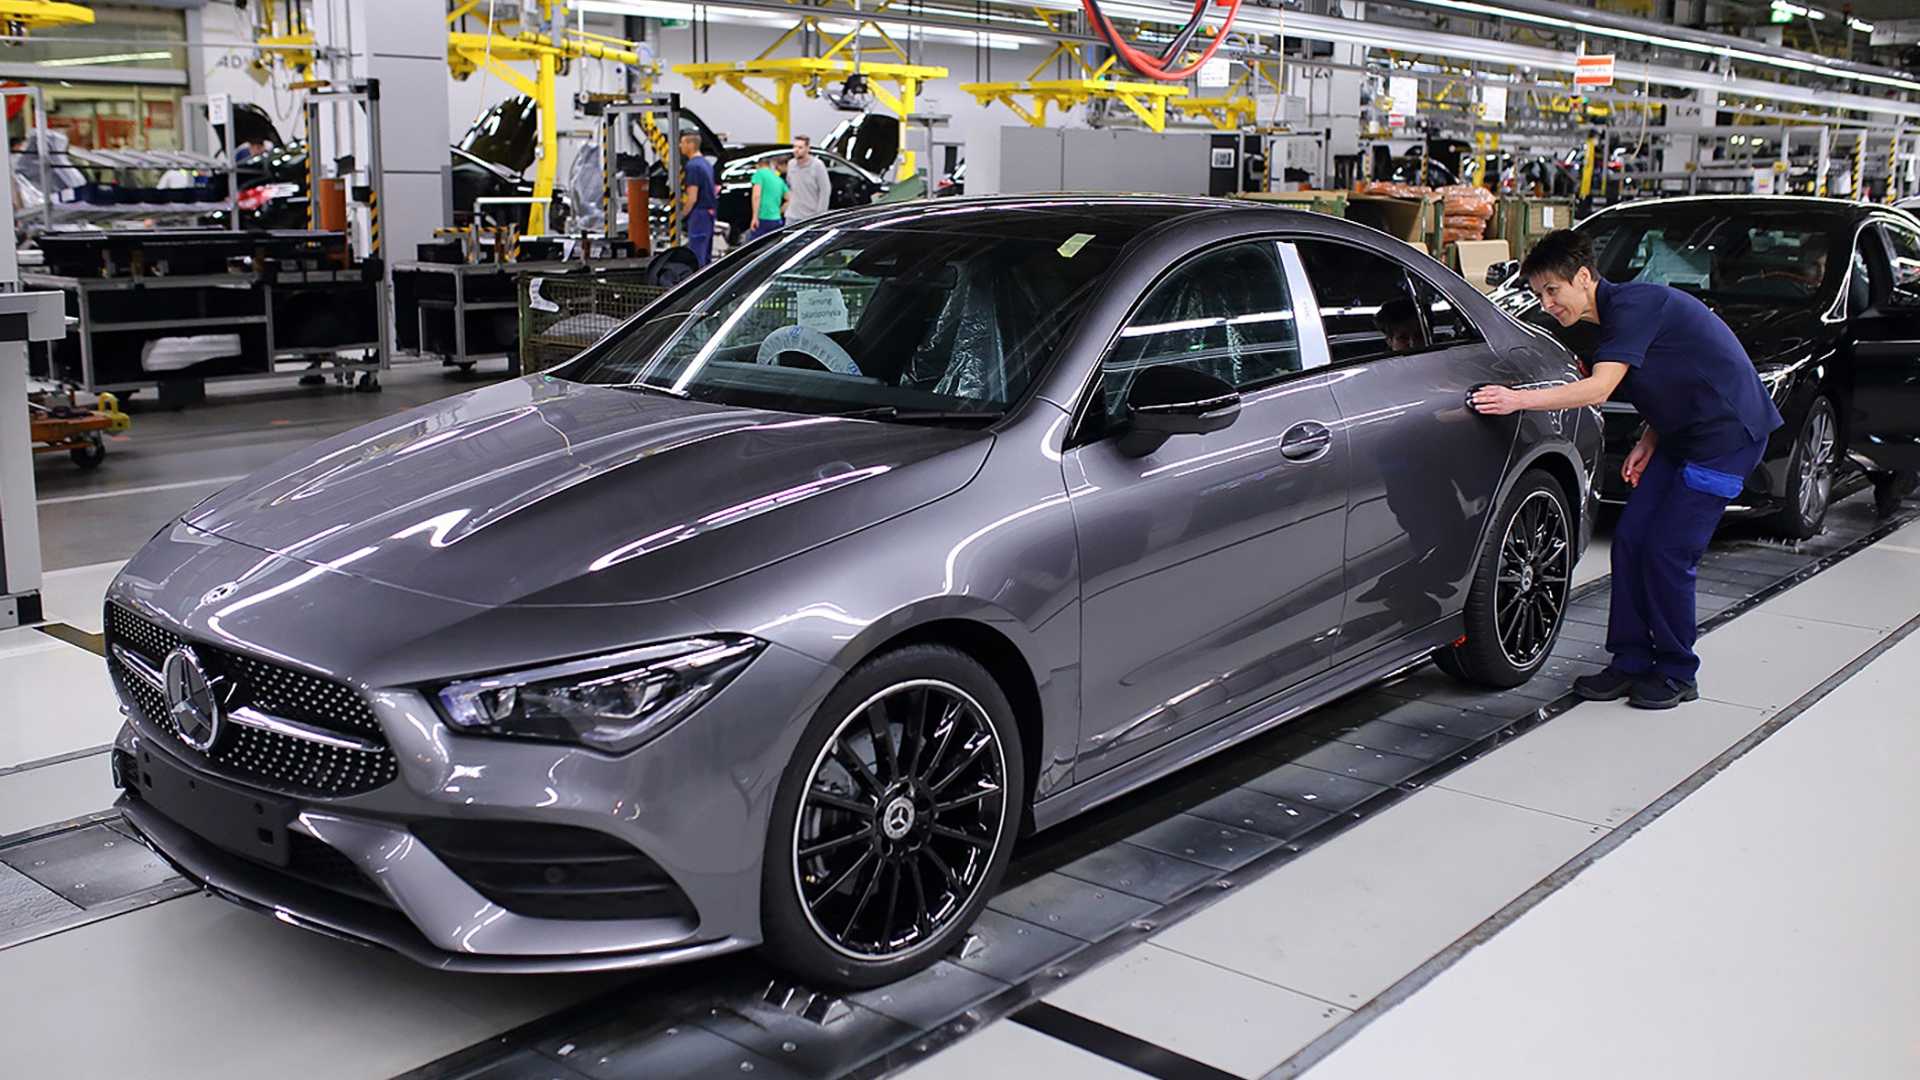 2020 Mercedes-Benz CLA production commences